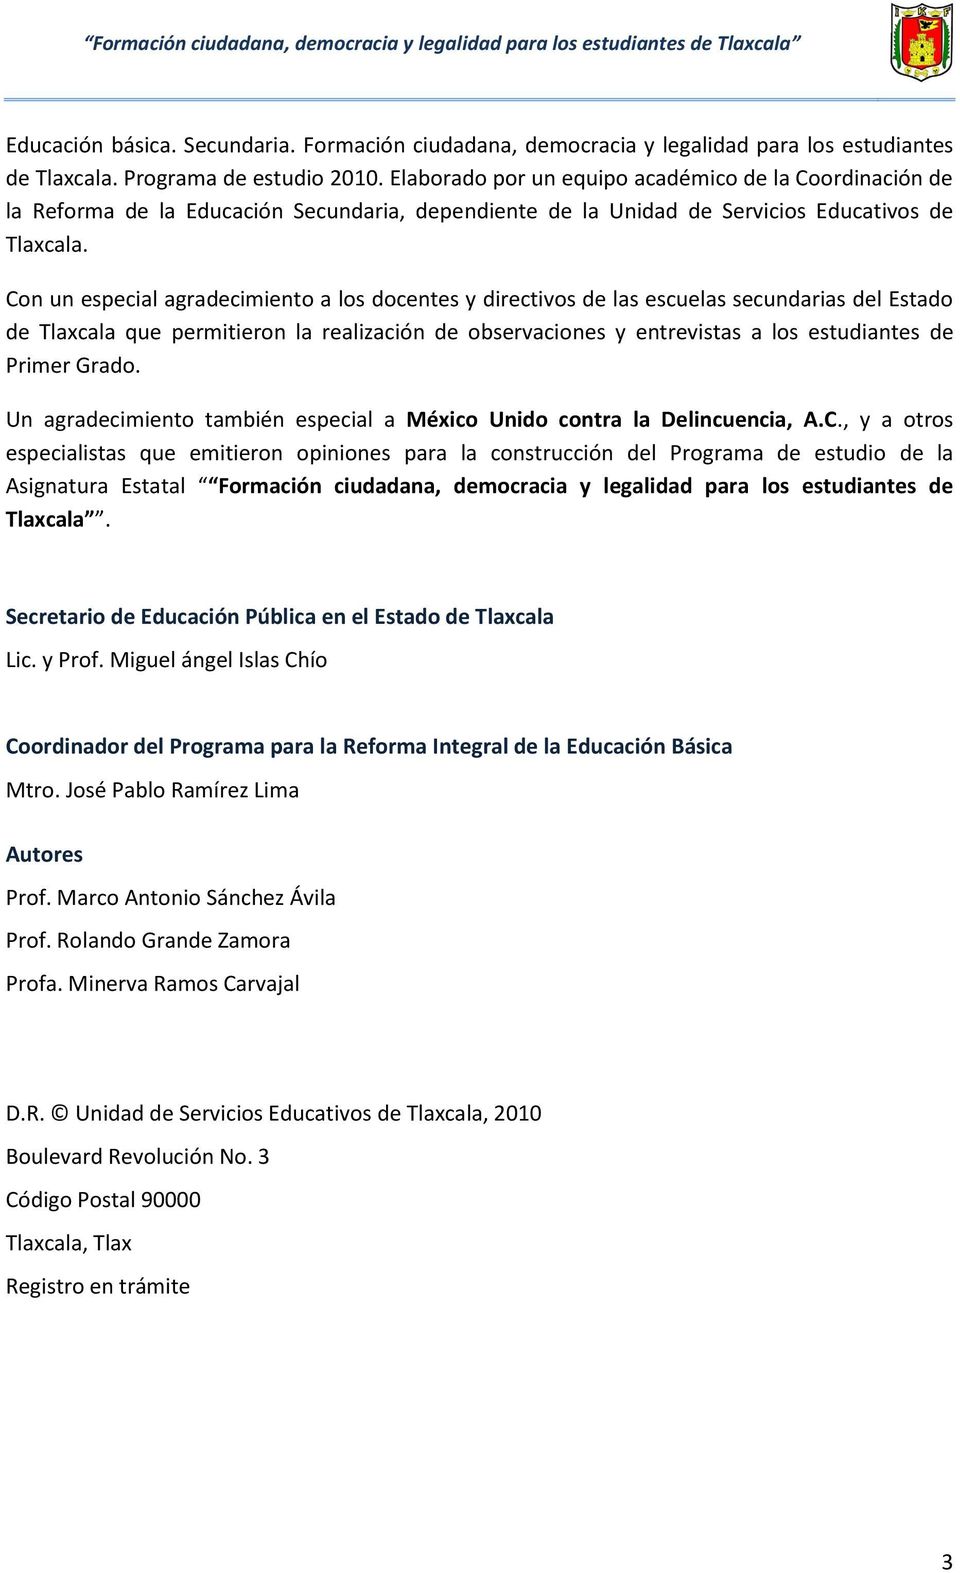 Con un especial agradecimiento a los docentes y directivos de las escuelas secundarias del Estado de Tlaxcala que permitieron la realización de observaciones y entrevistas a los estudiantes de Primer